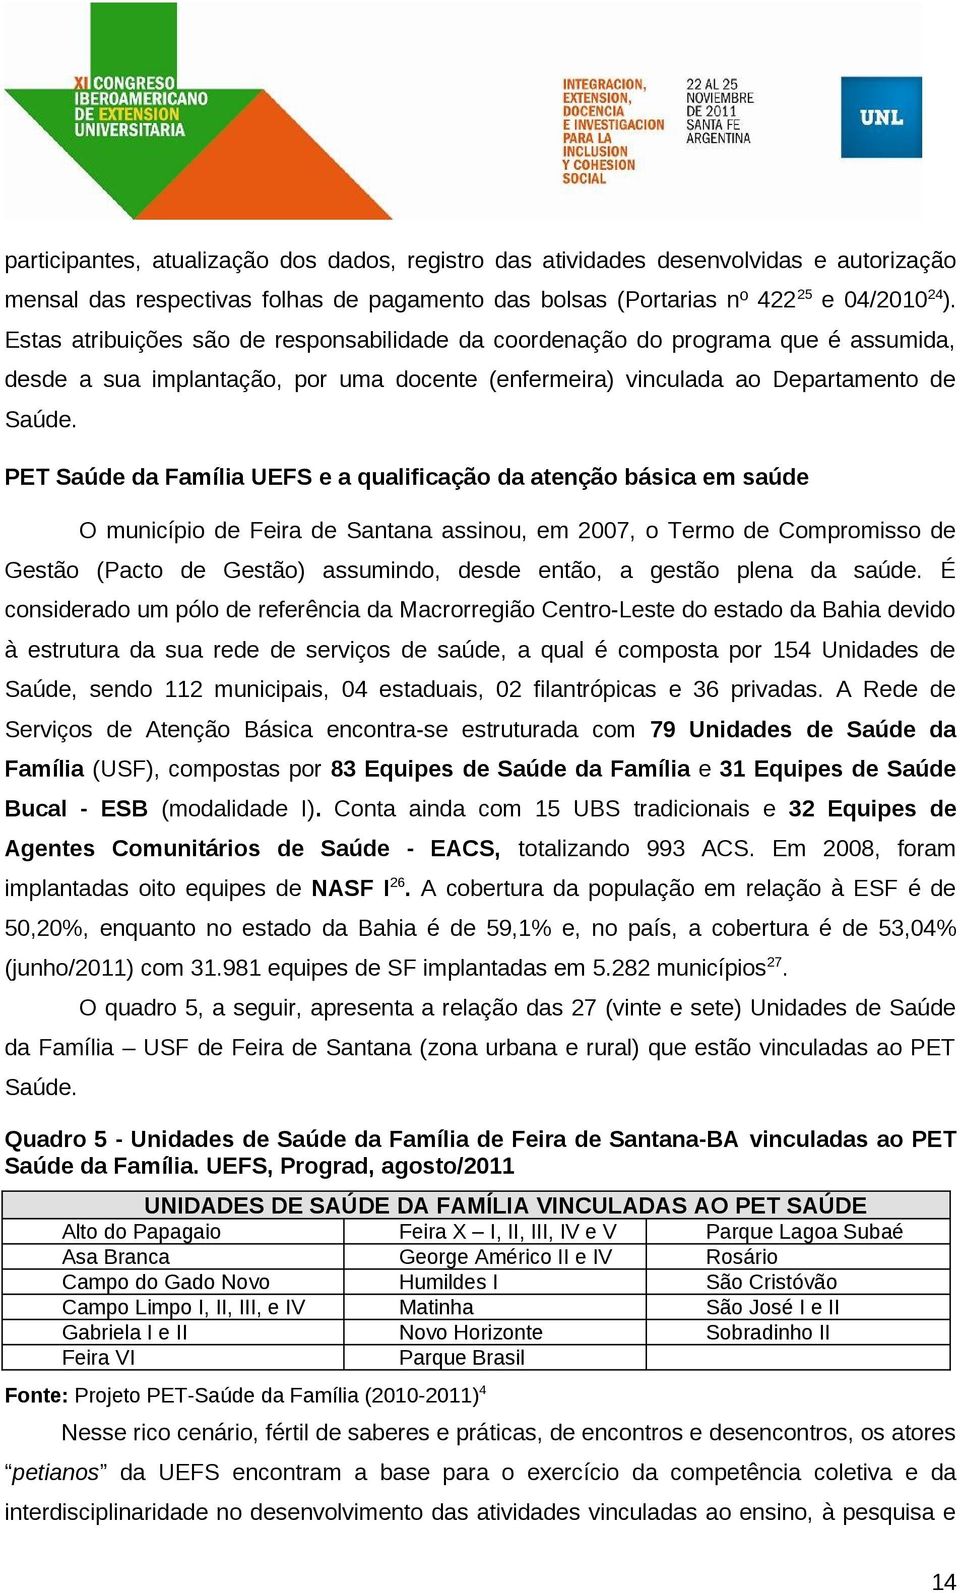 PET Saúde da Família UEFS e a qualificação da atenção básica em saúde O município de Feira de Santana assinou, em 2007, o Termo de Compromisso de Gestão (Pacto de Gestão) assumindo, desde então, a